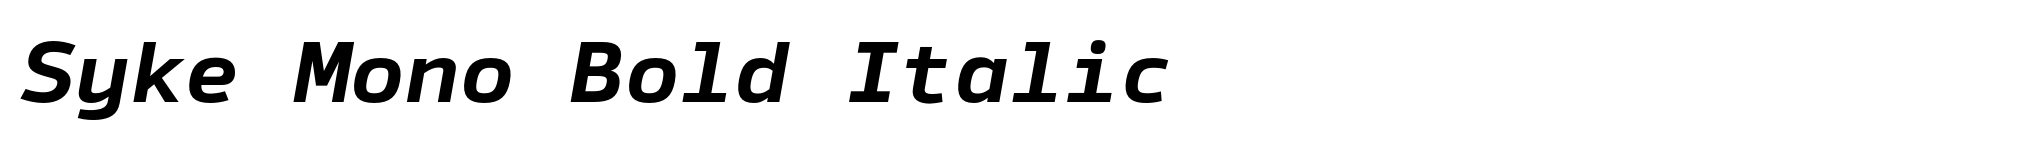 Syke Mono Bold Italic image